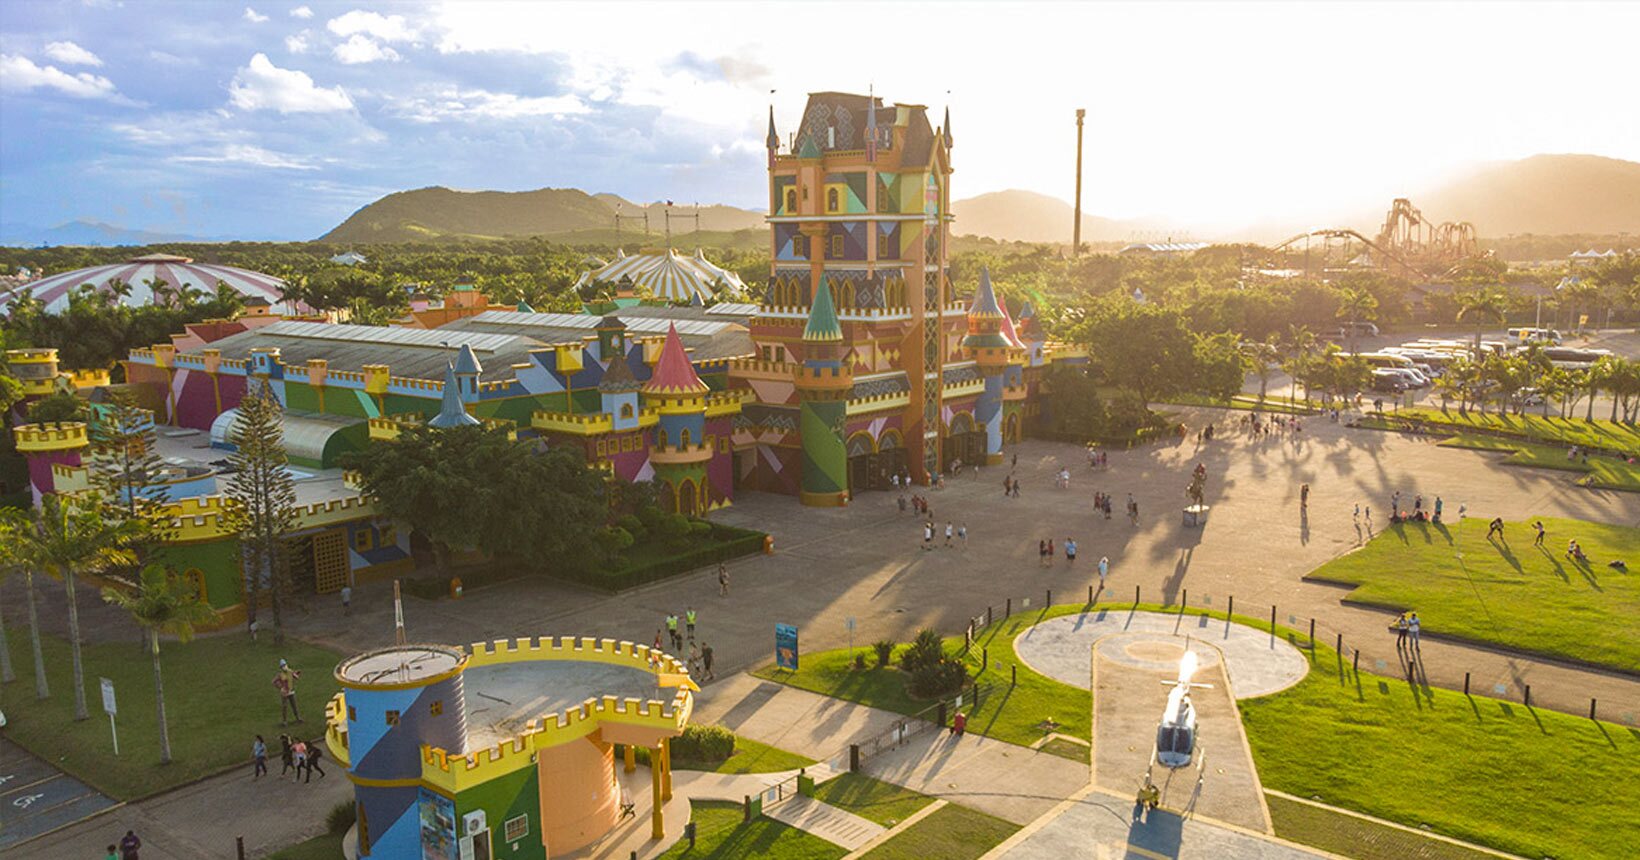 Beto Carrero World! Guia completíssimo do maior parque de diversões do  Brasil!